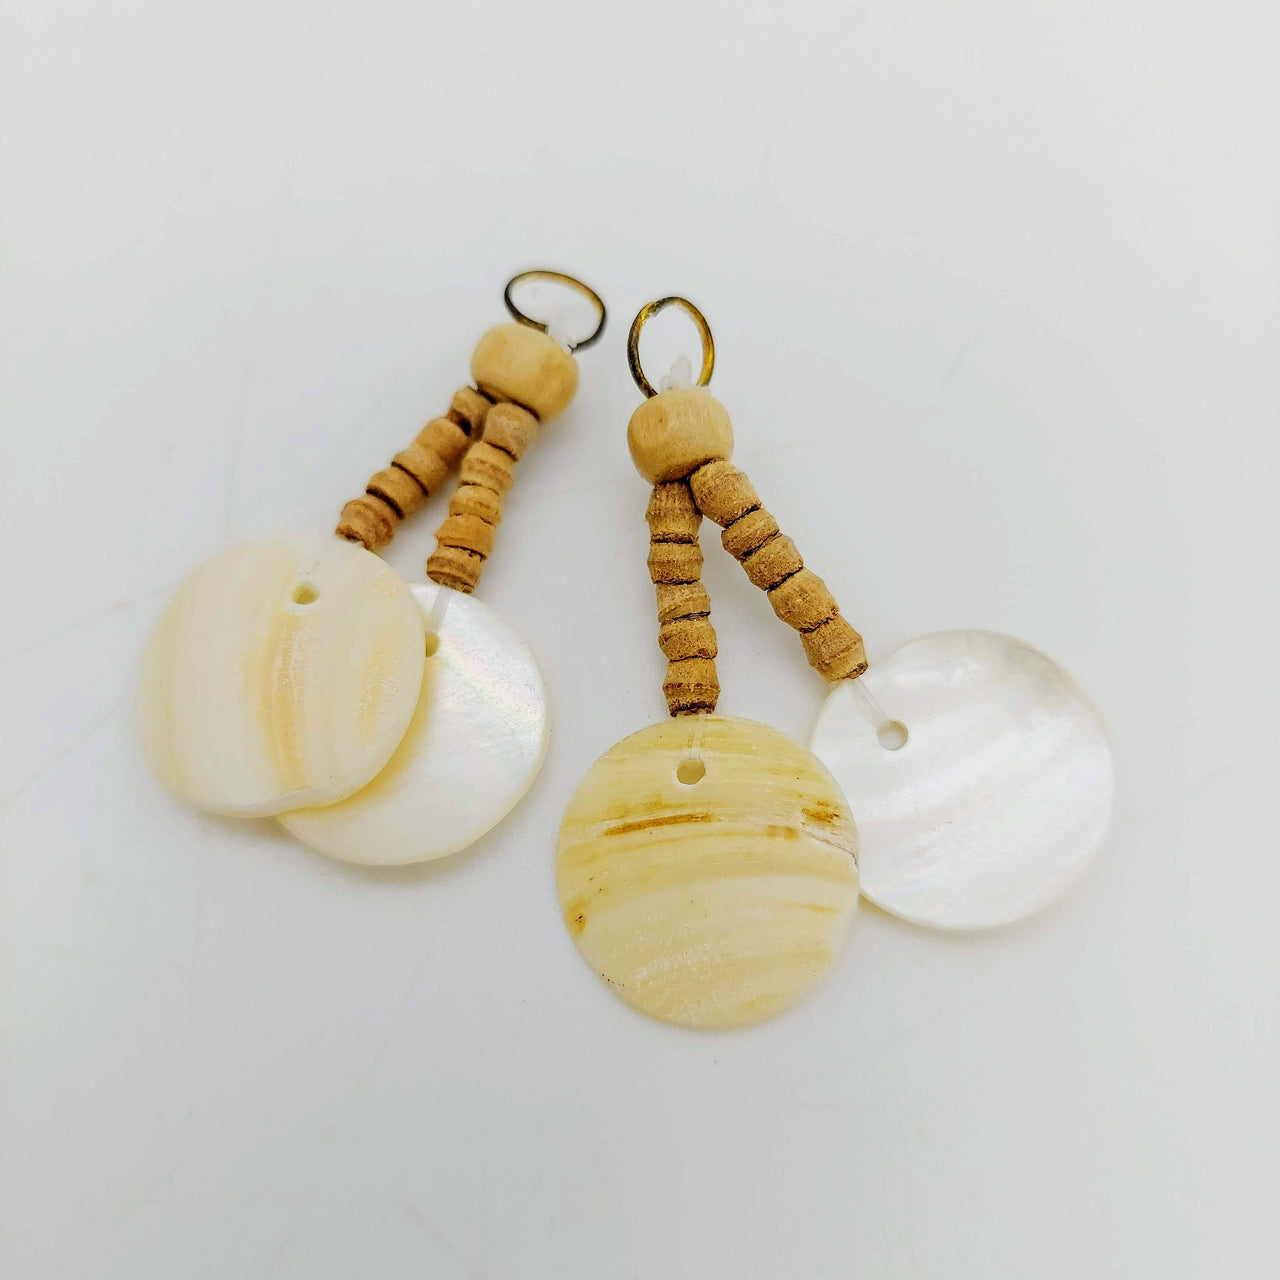 Seashells Handmade Tassel with Wood Beads, Boho Tassel Latkan, 1 Pair